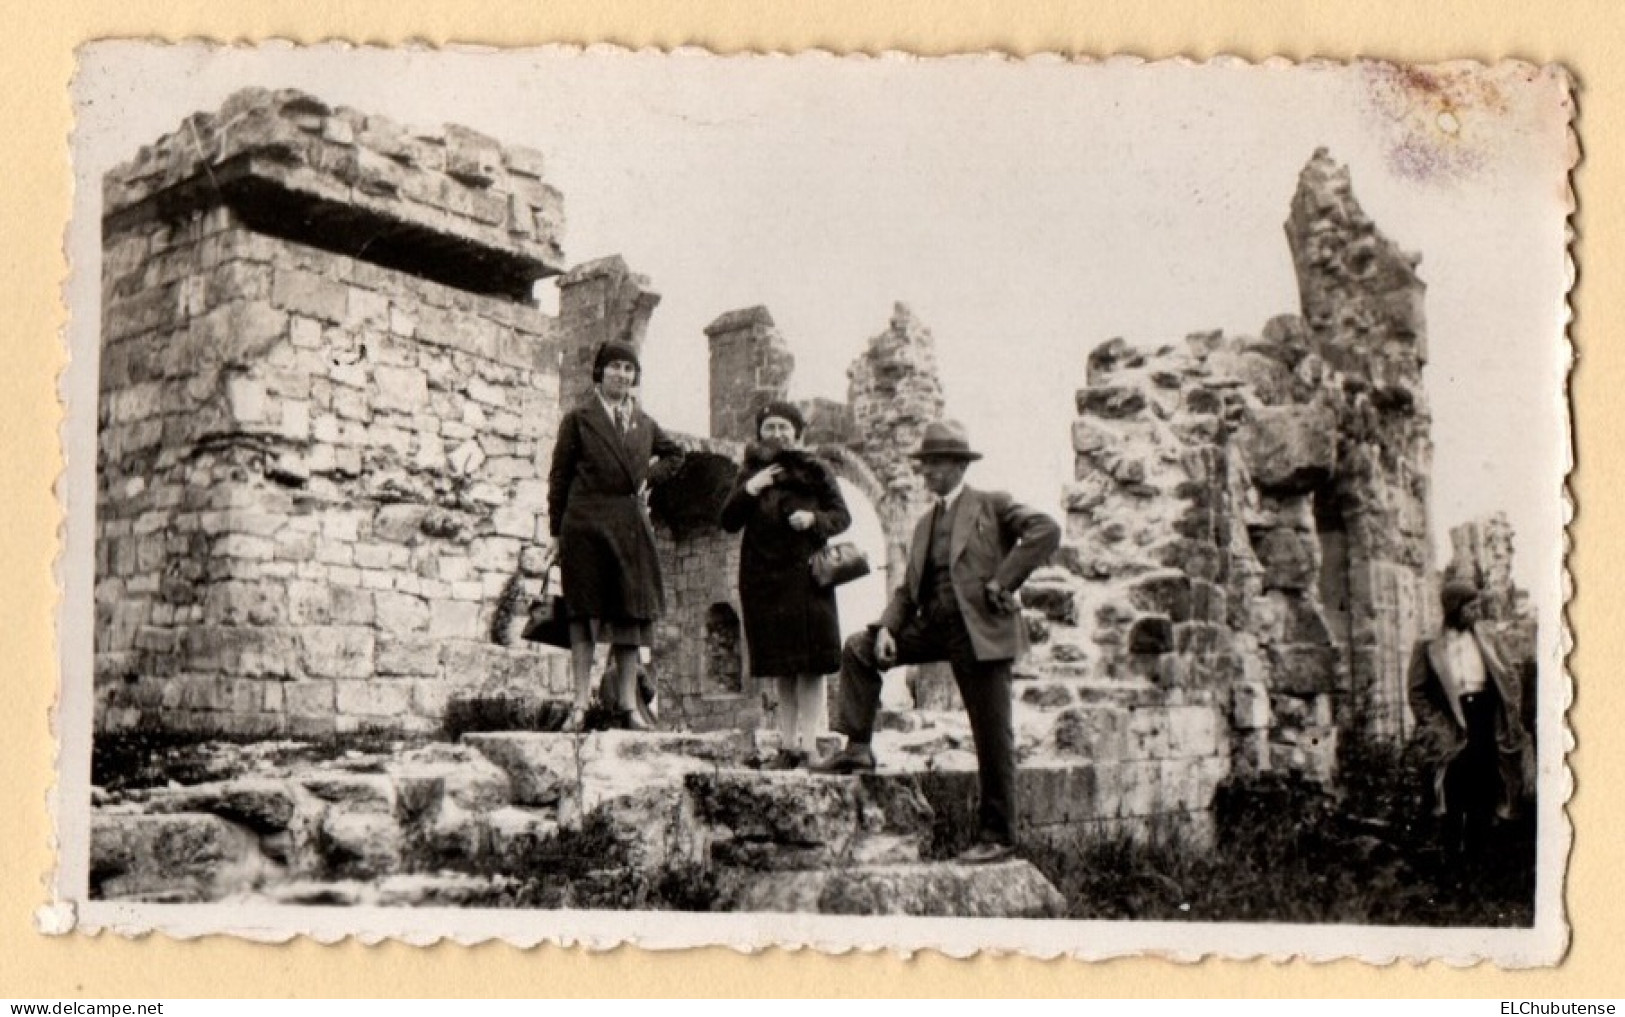 Lot photos visite anciens combattants ruines cabane tour en bois village Montfaucon d'Argonne Meuse années 1930